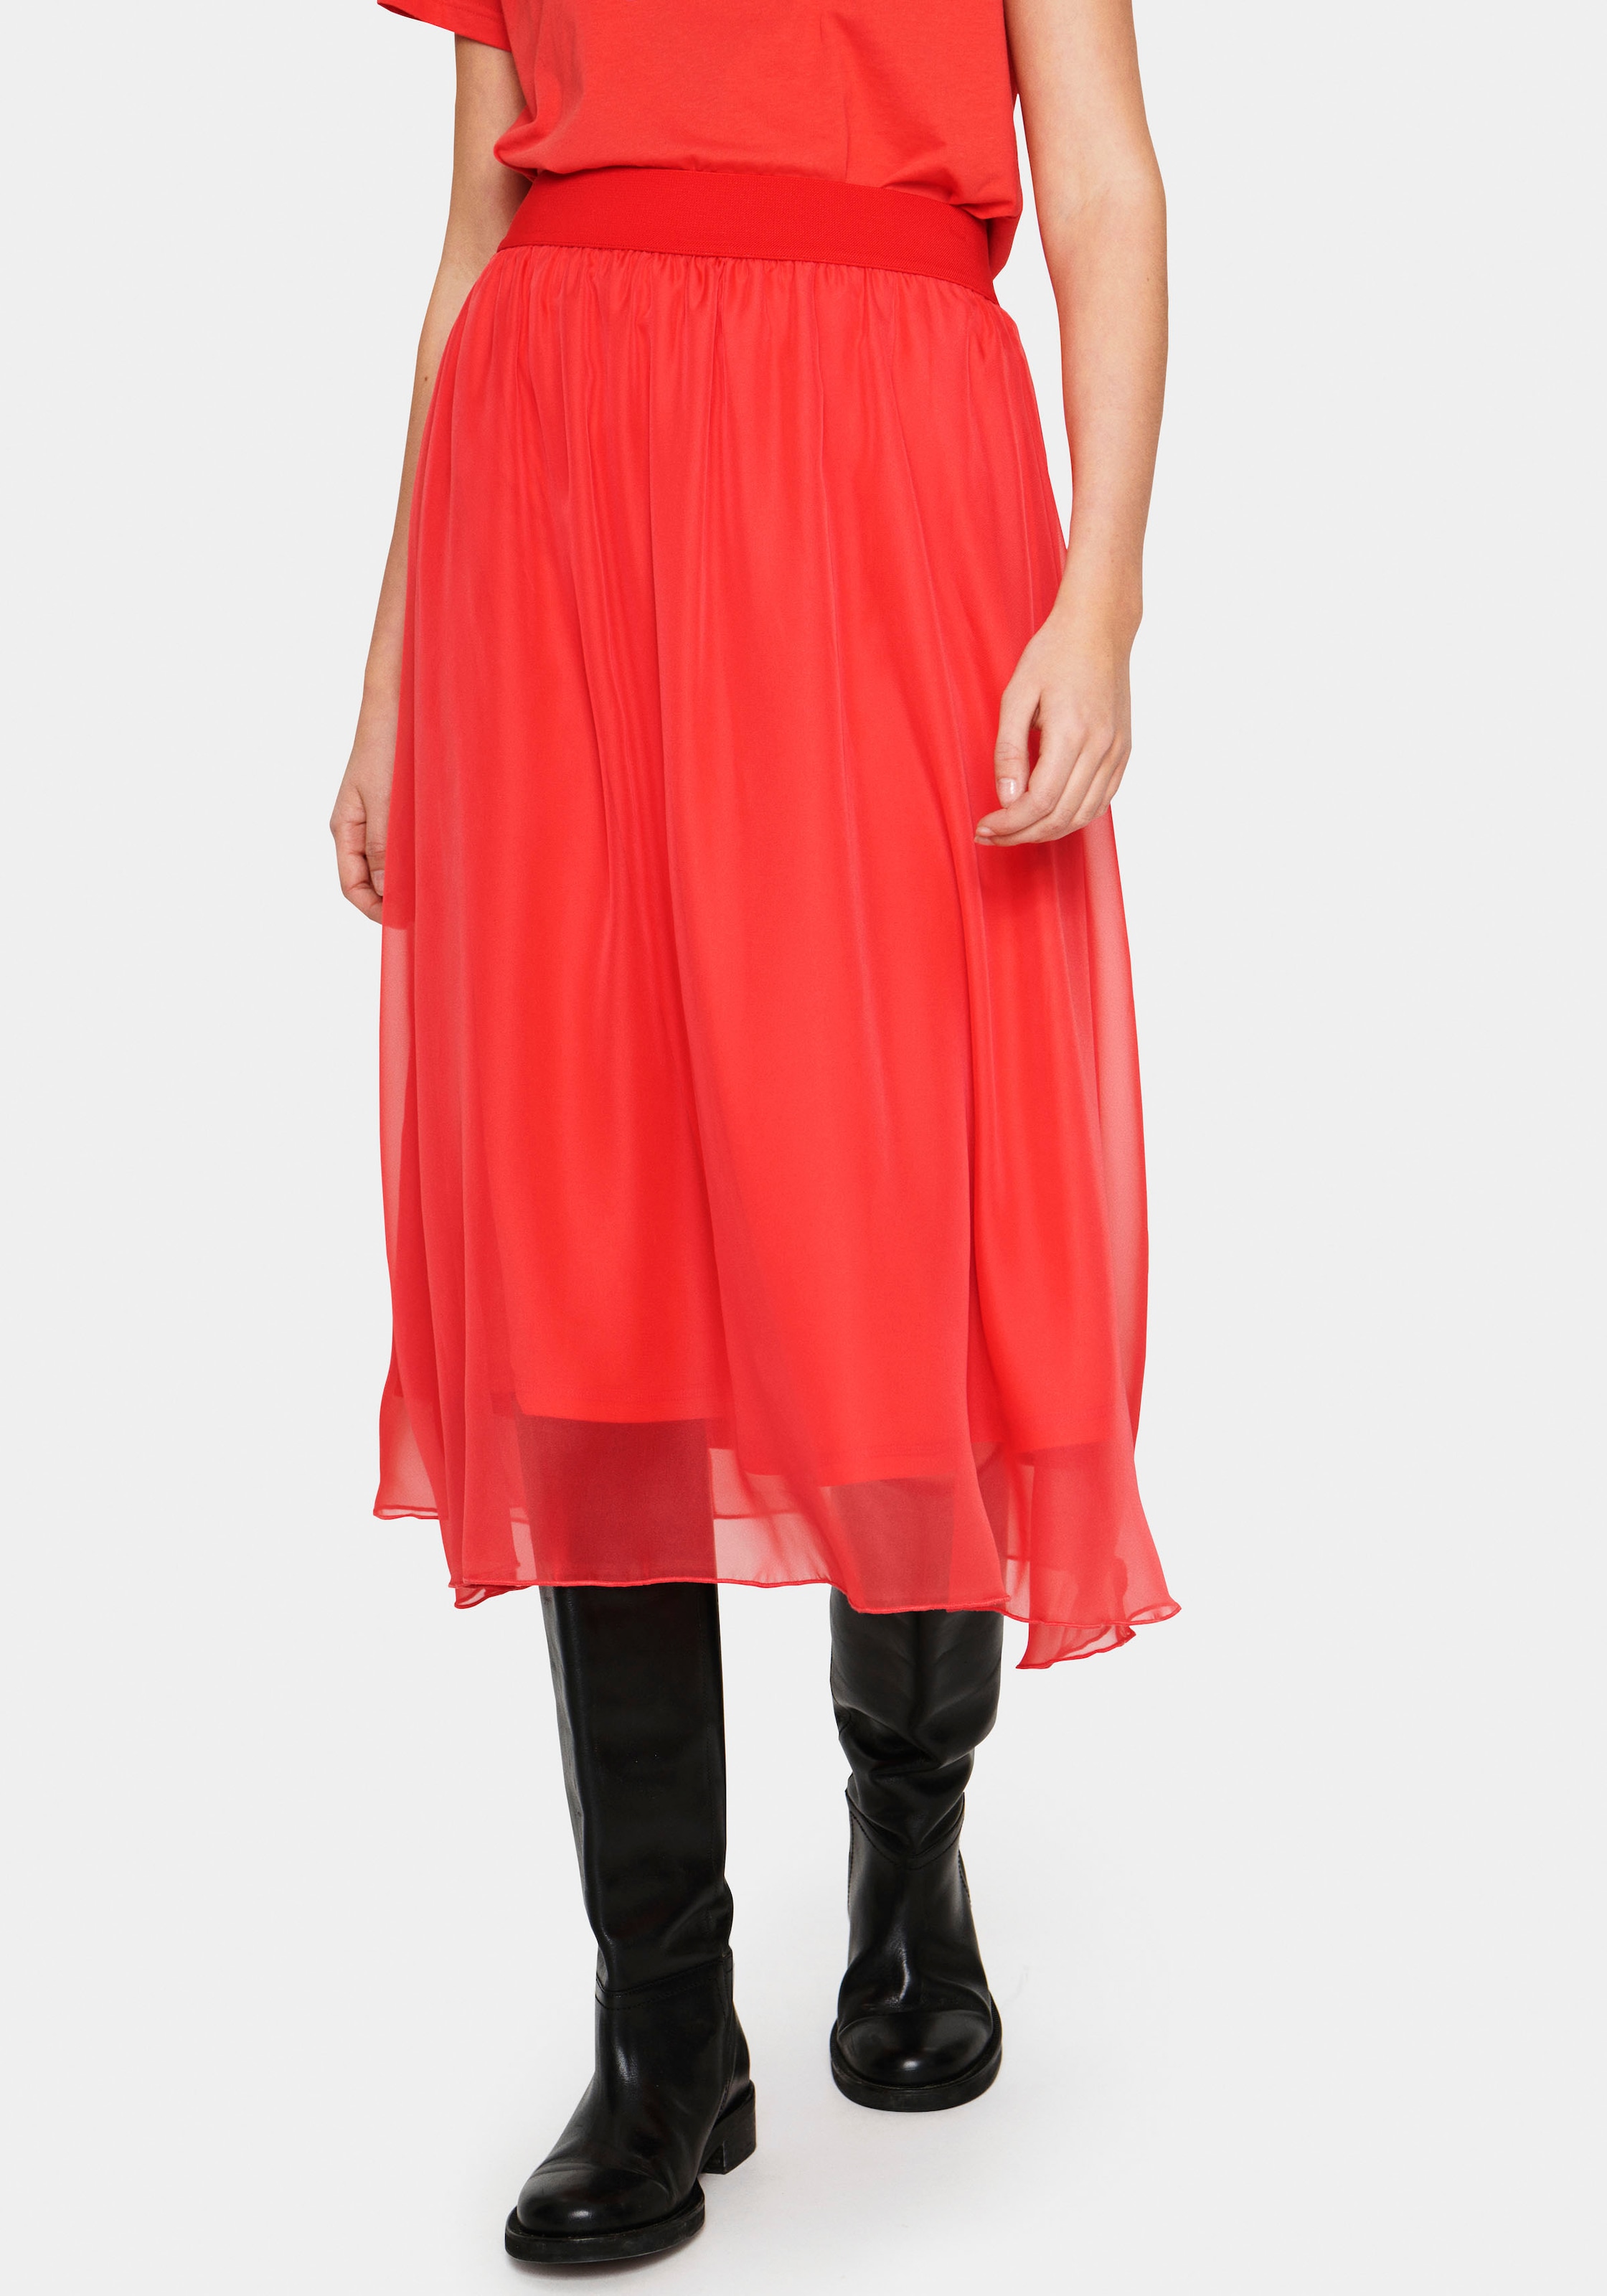 »CoralSZ Saint Maxirock Skirt« bestellen online Tropez